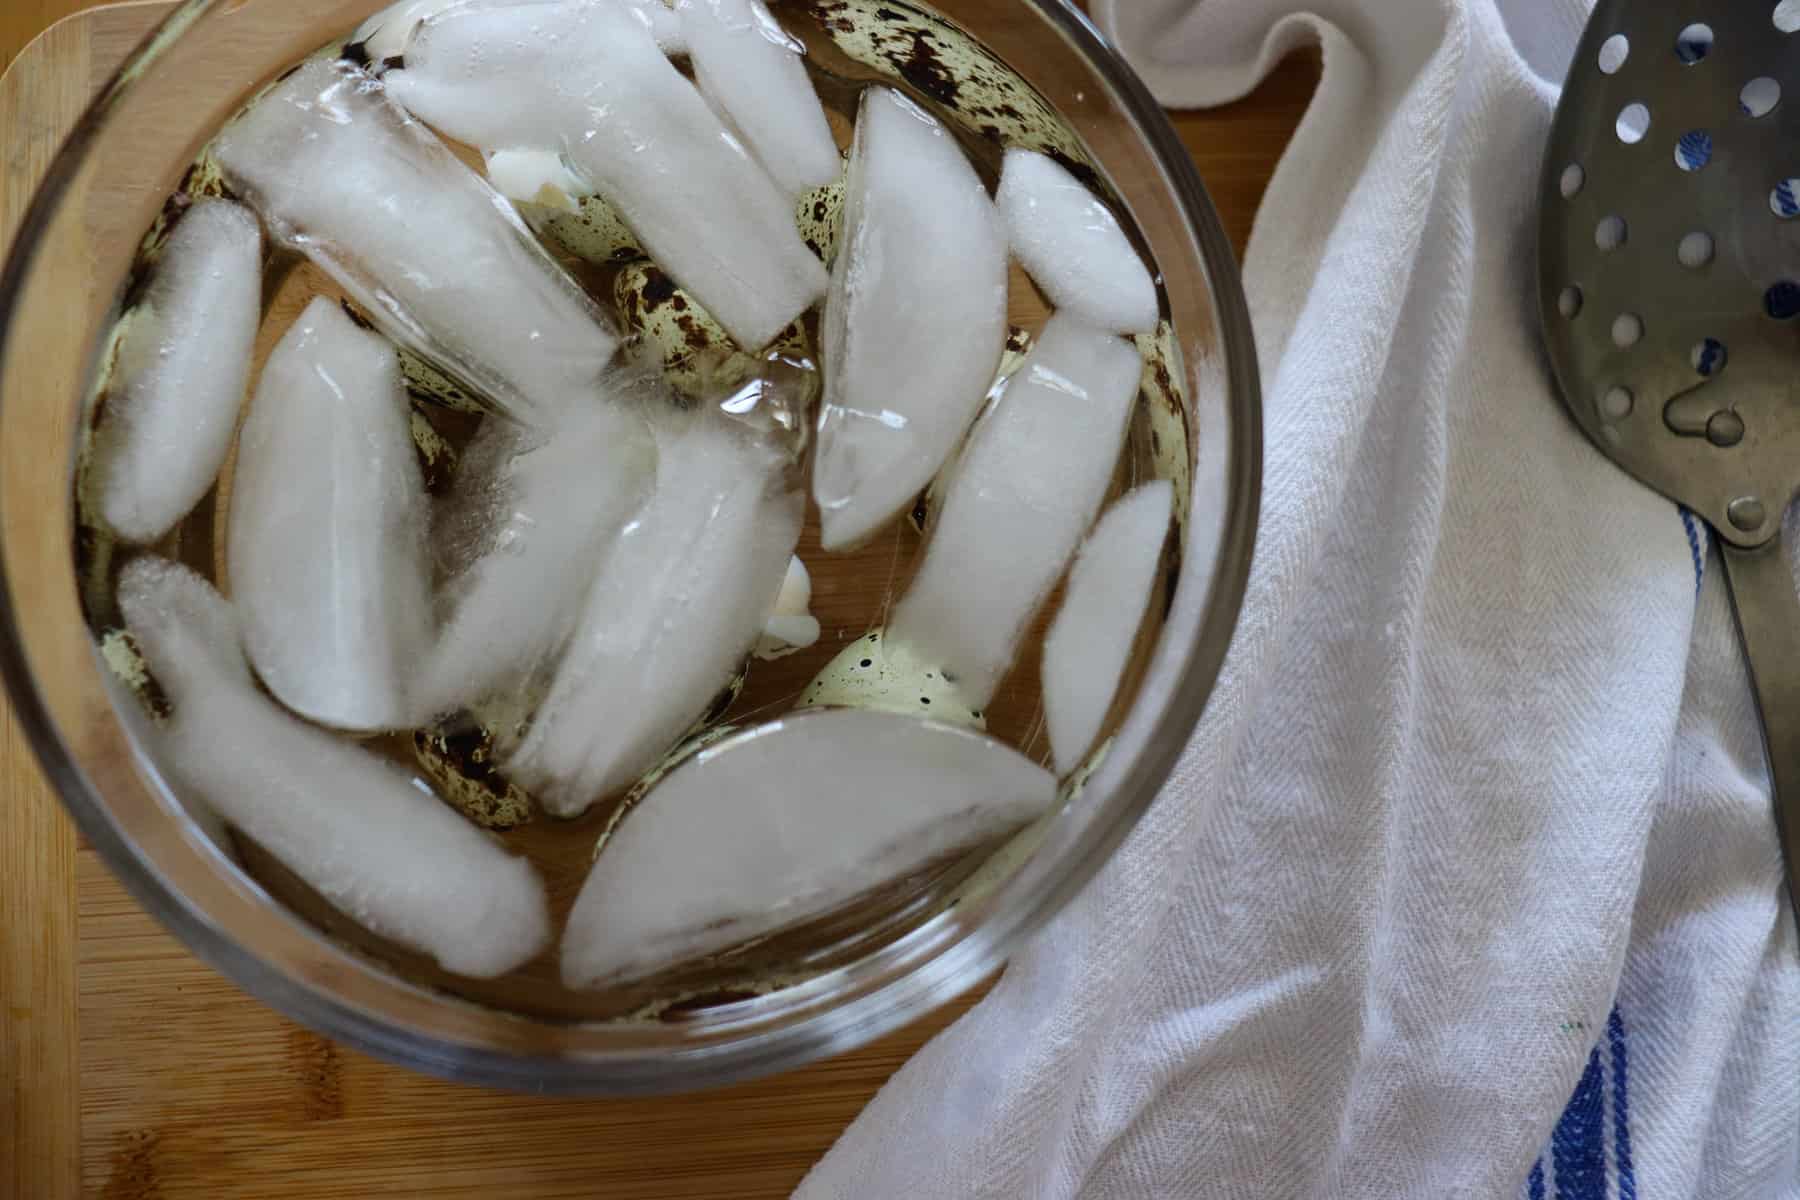 quail eggs in an ice bath